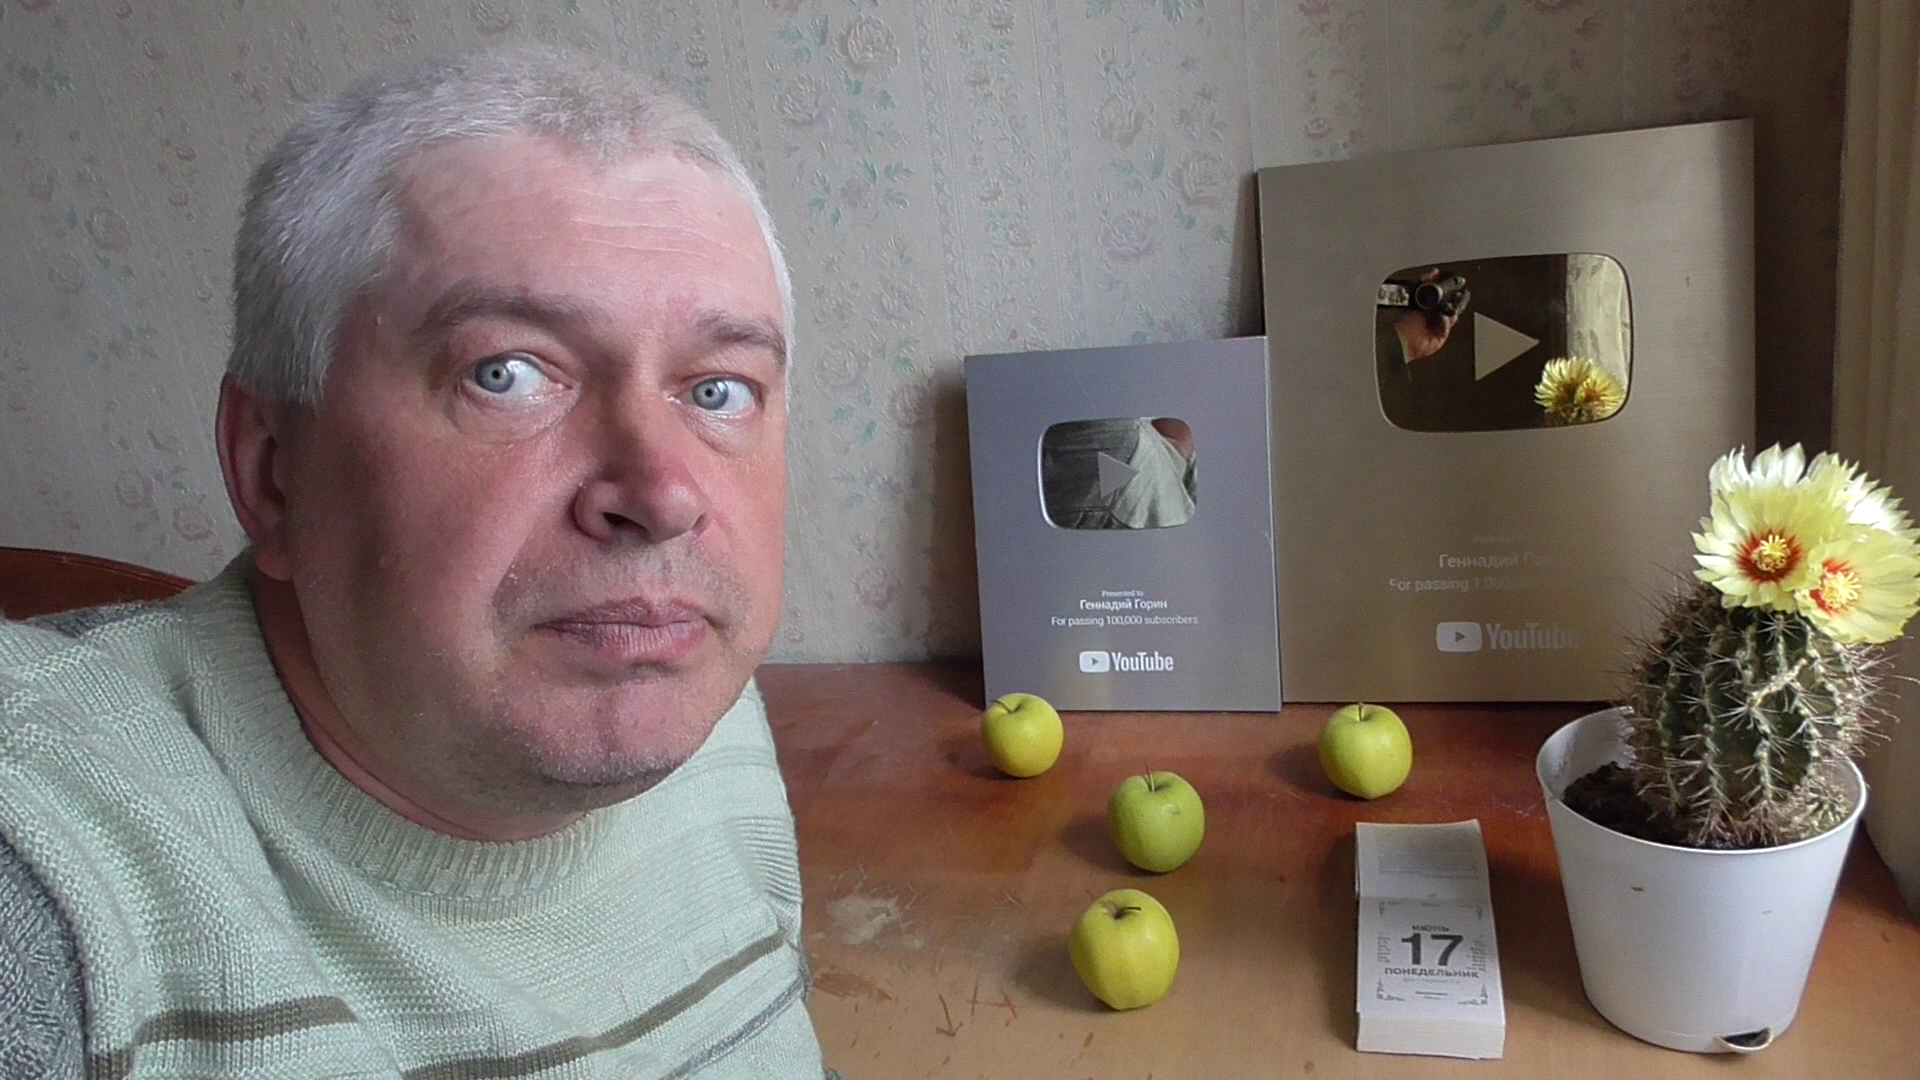 Я в комнате за столом. На столе: яблоки, календарь, кактус и мои награды Геннадий Горин